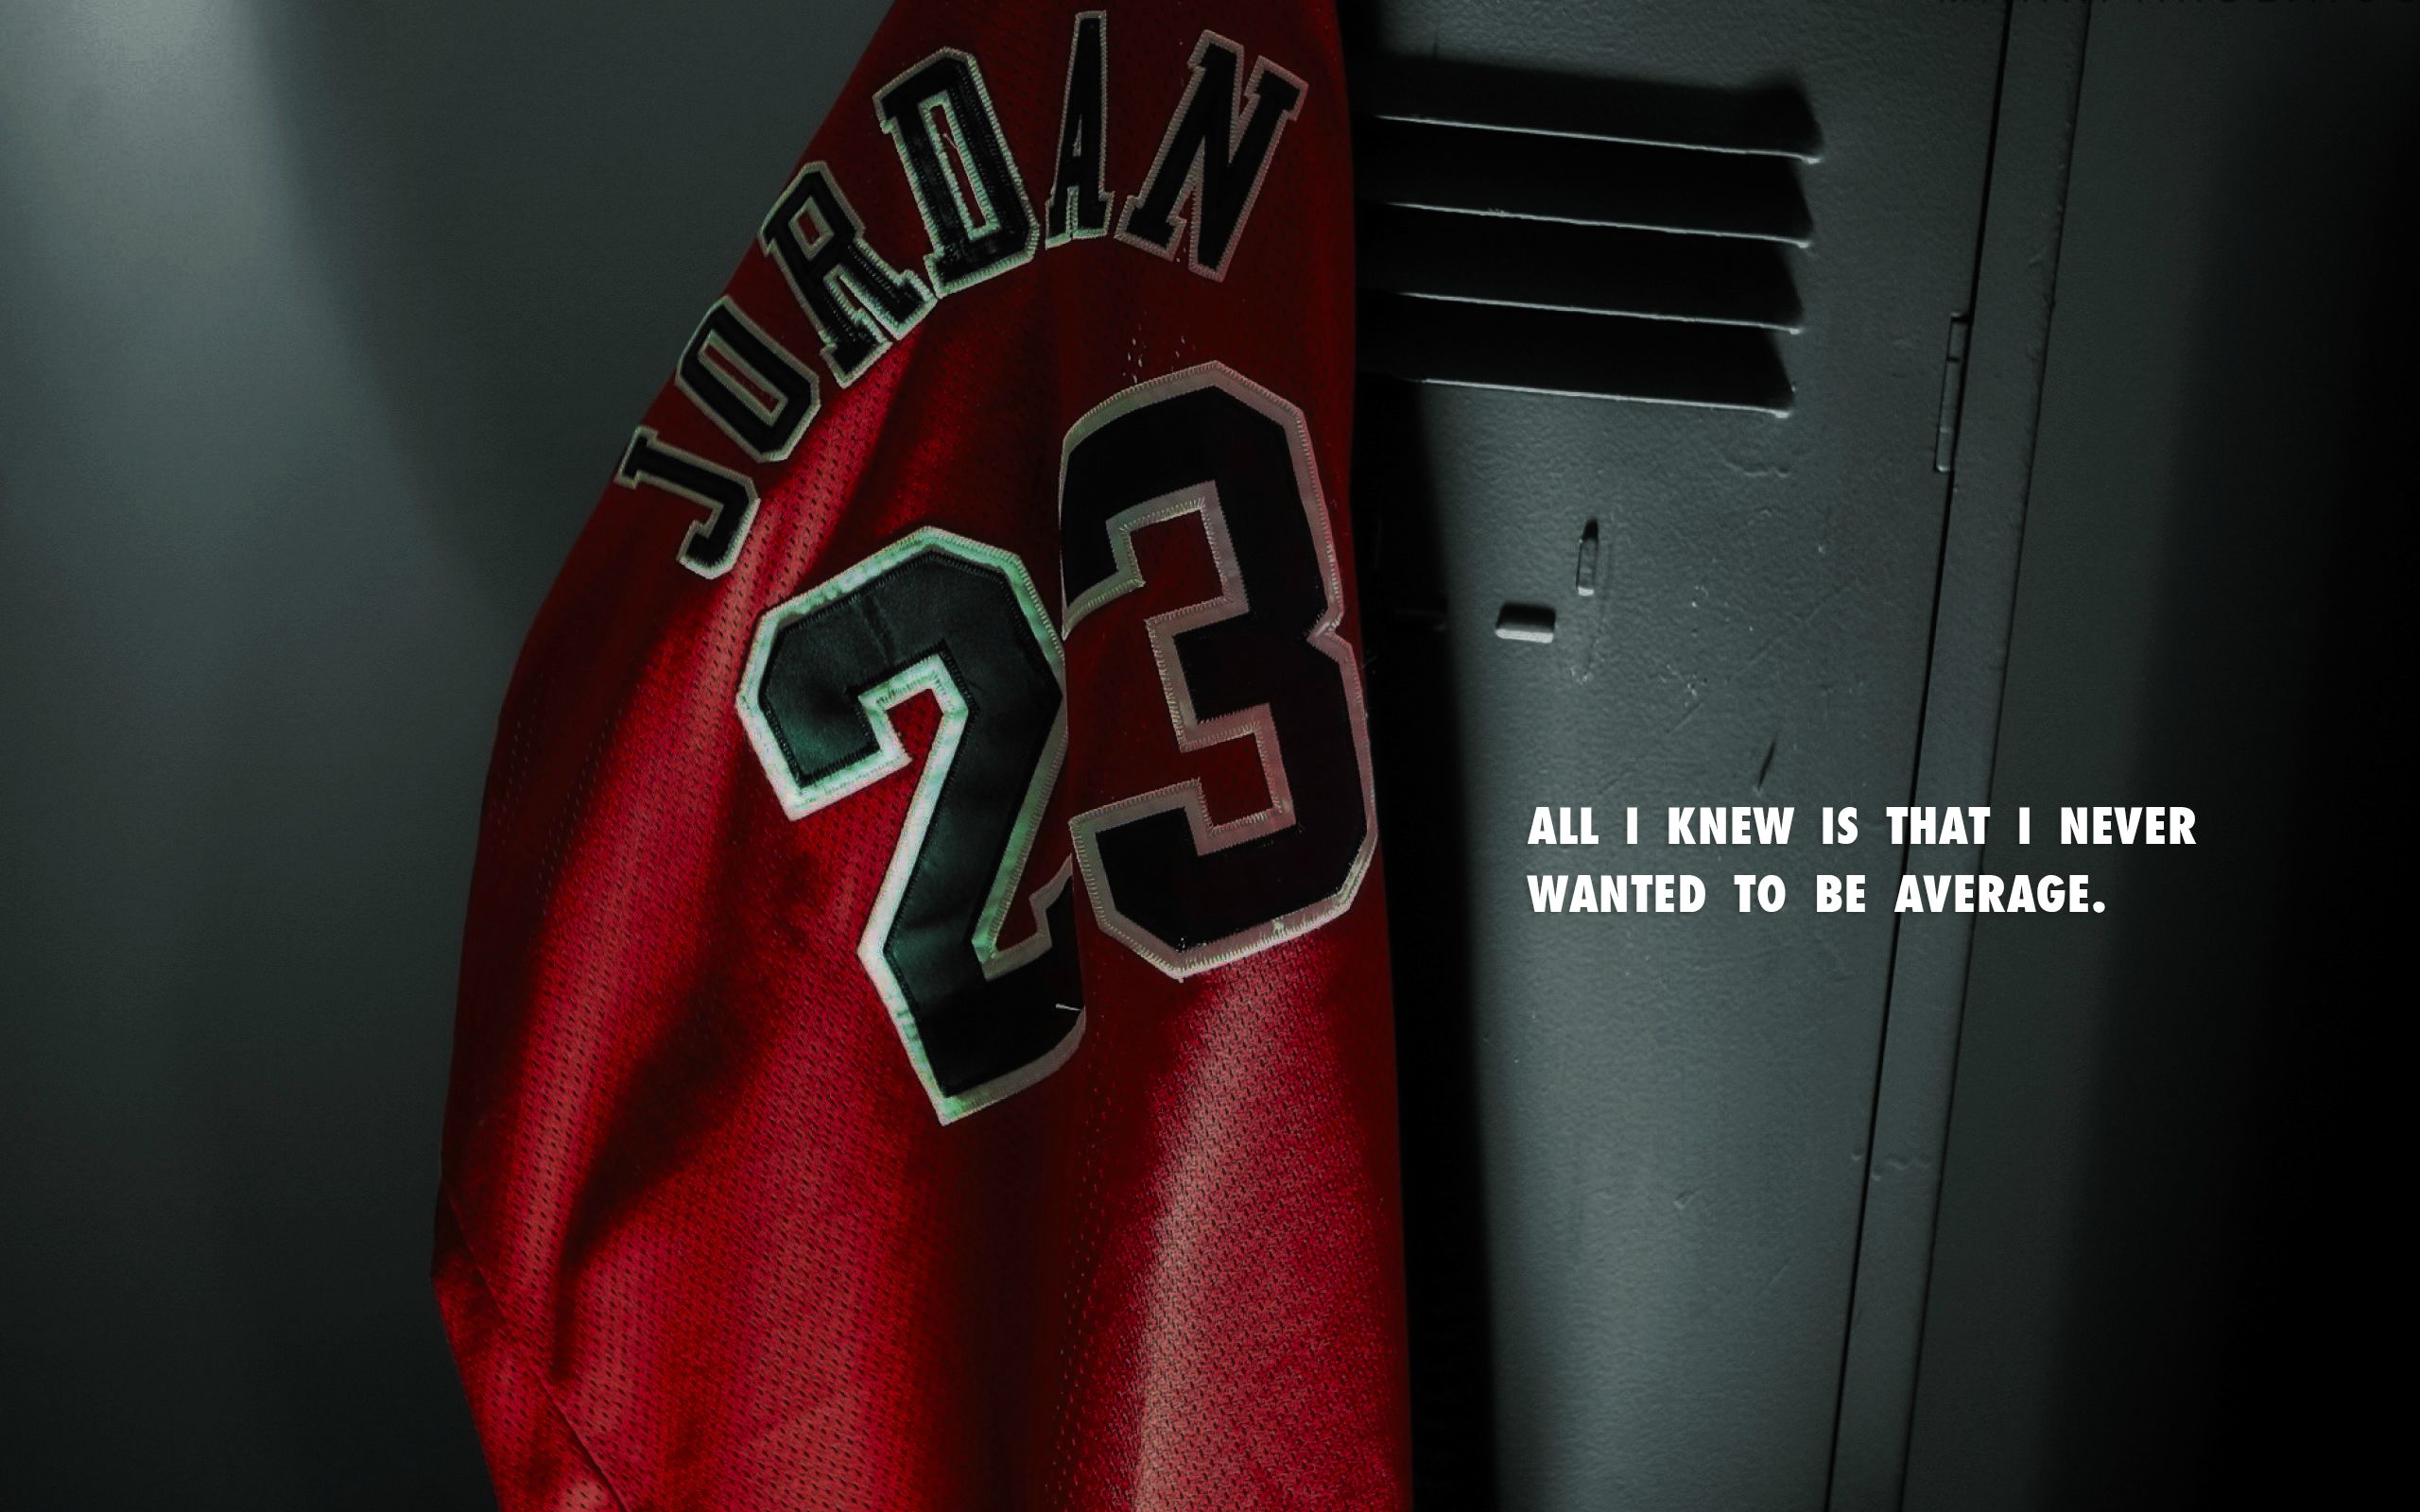 Michael Jordan Quote HD Wallpapers Free Download | PixelsTalk.Net